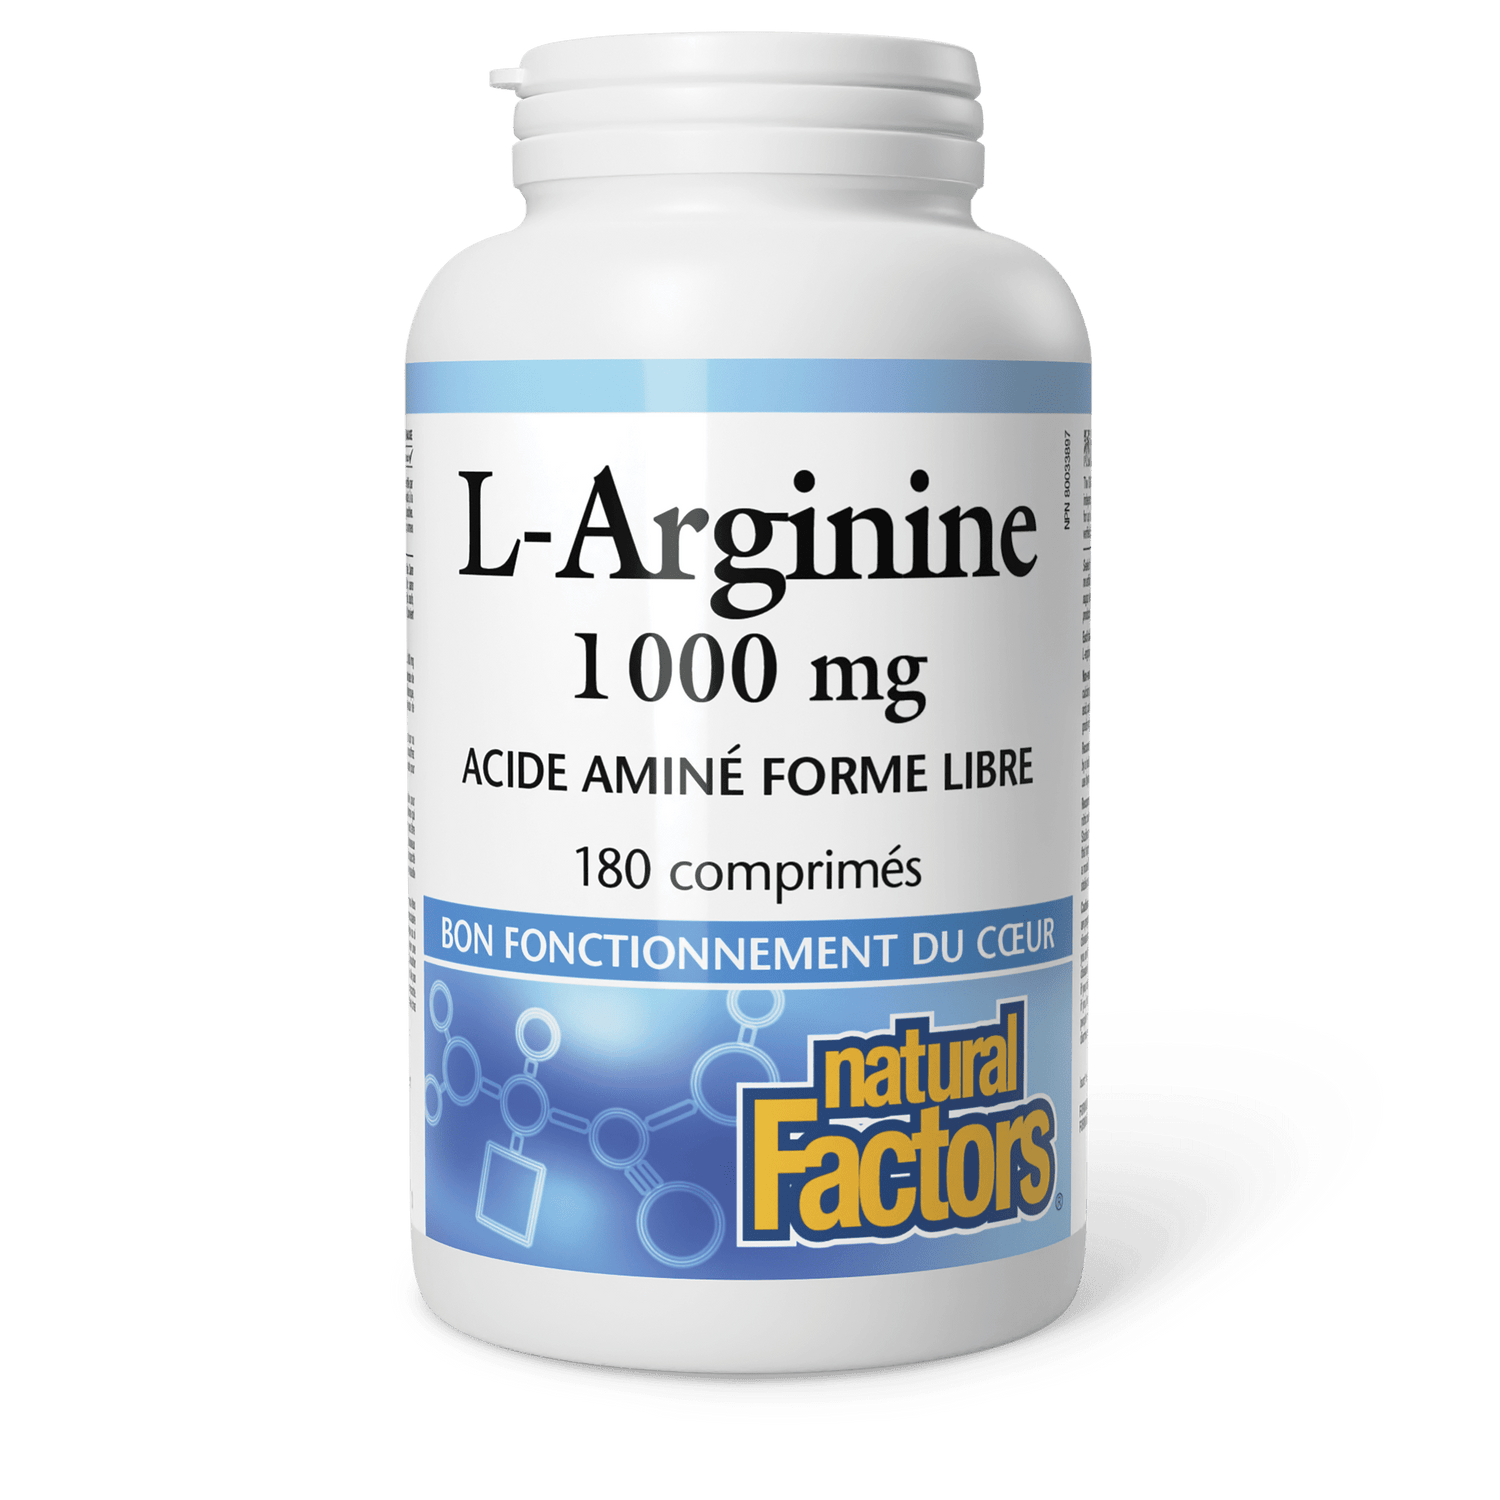 L-Arginine 1 000 mg, Natural Factors|v|image|2856